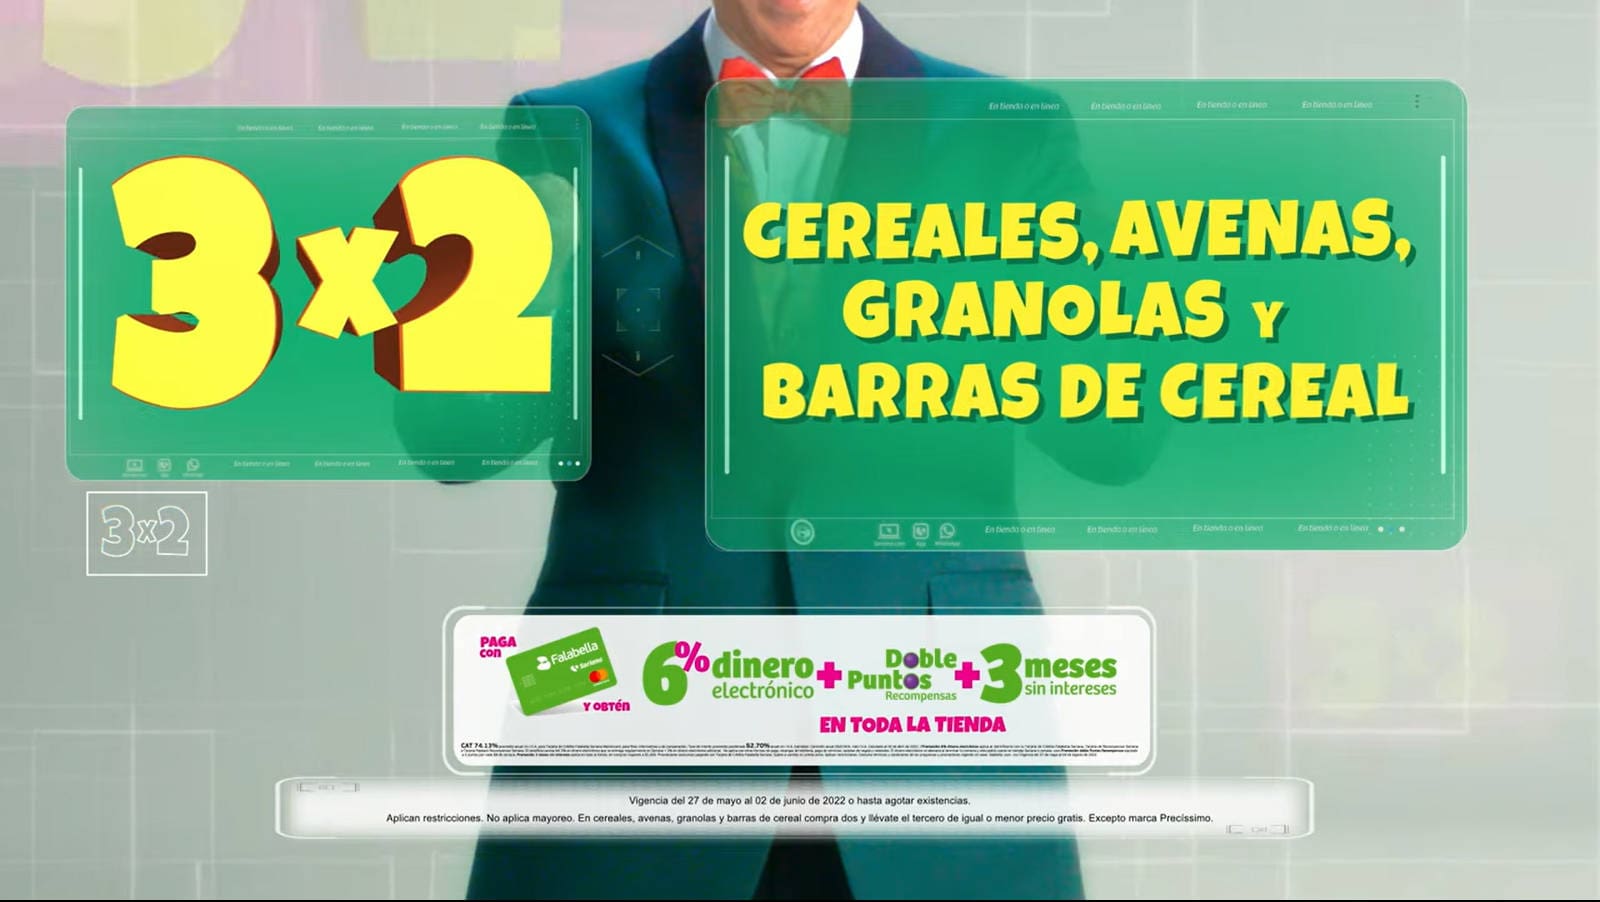 Julio Regalado 2022: 3x2 en cereales, avenas, granolas y barras de cereal 2